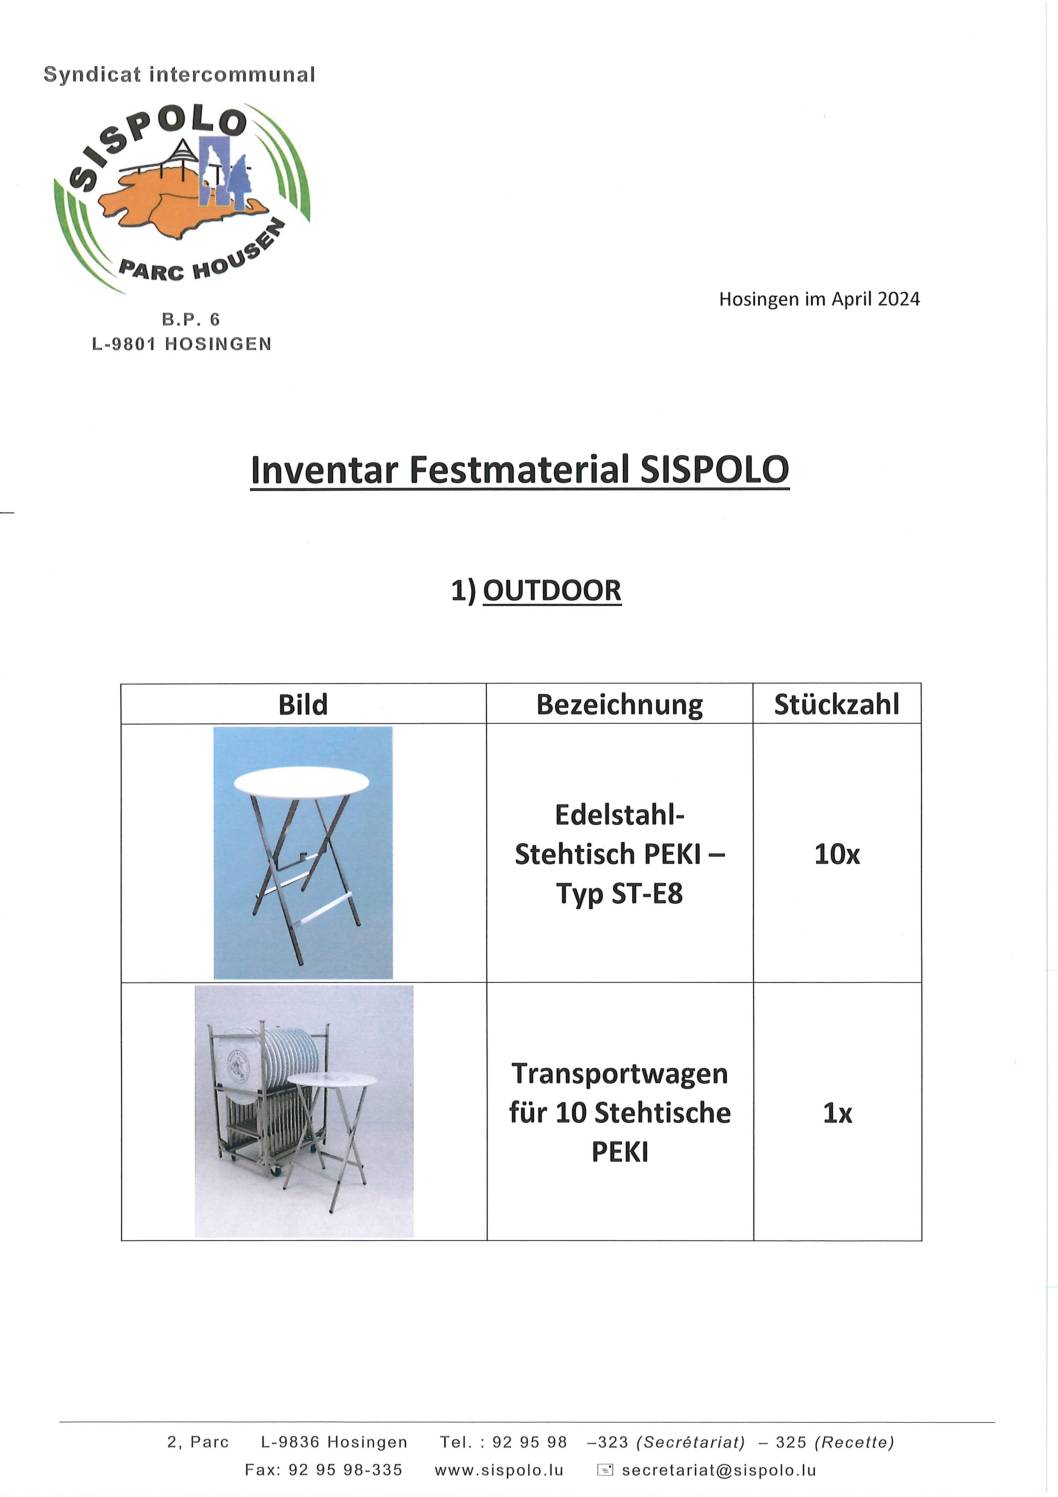 Festmaterial SISPOLO - Inventar 22.04.2024